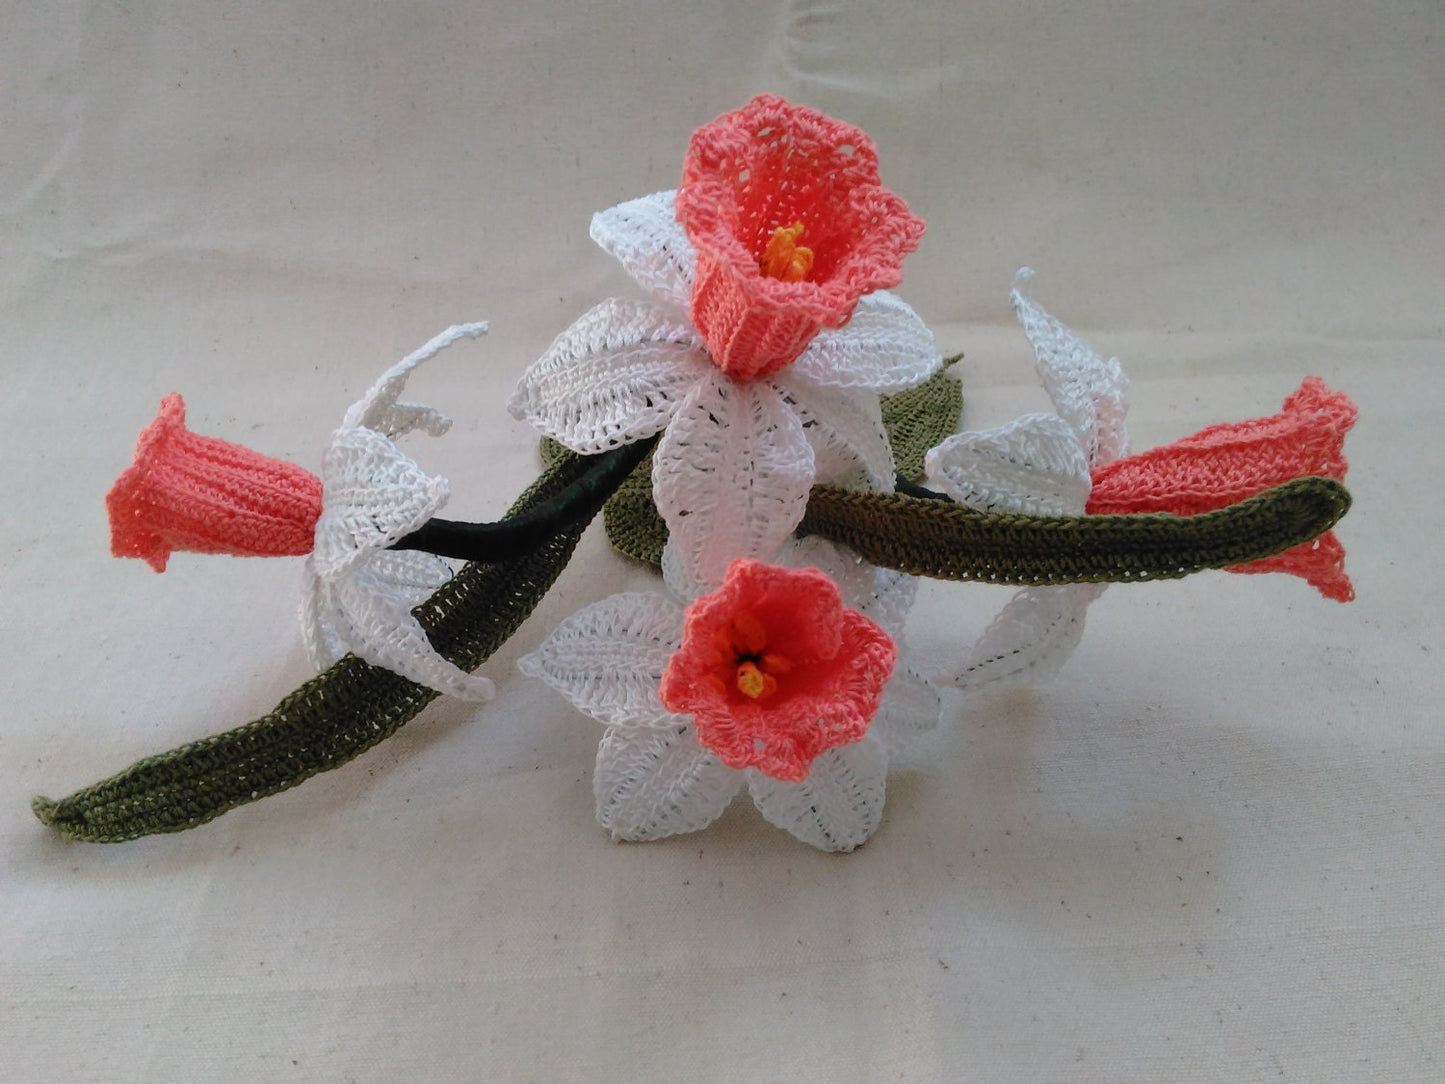 Crochet Cotinga Daffodil